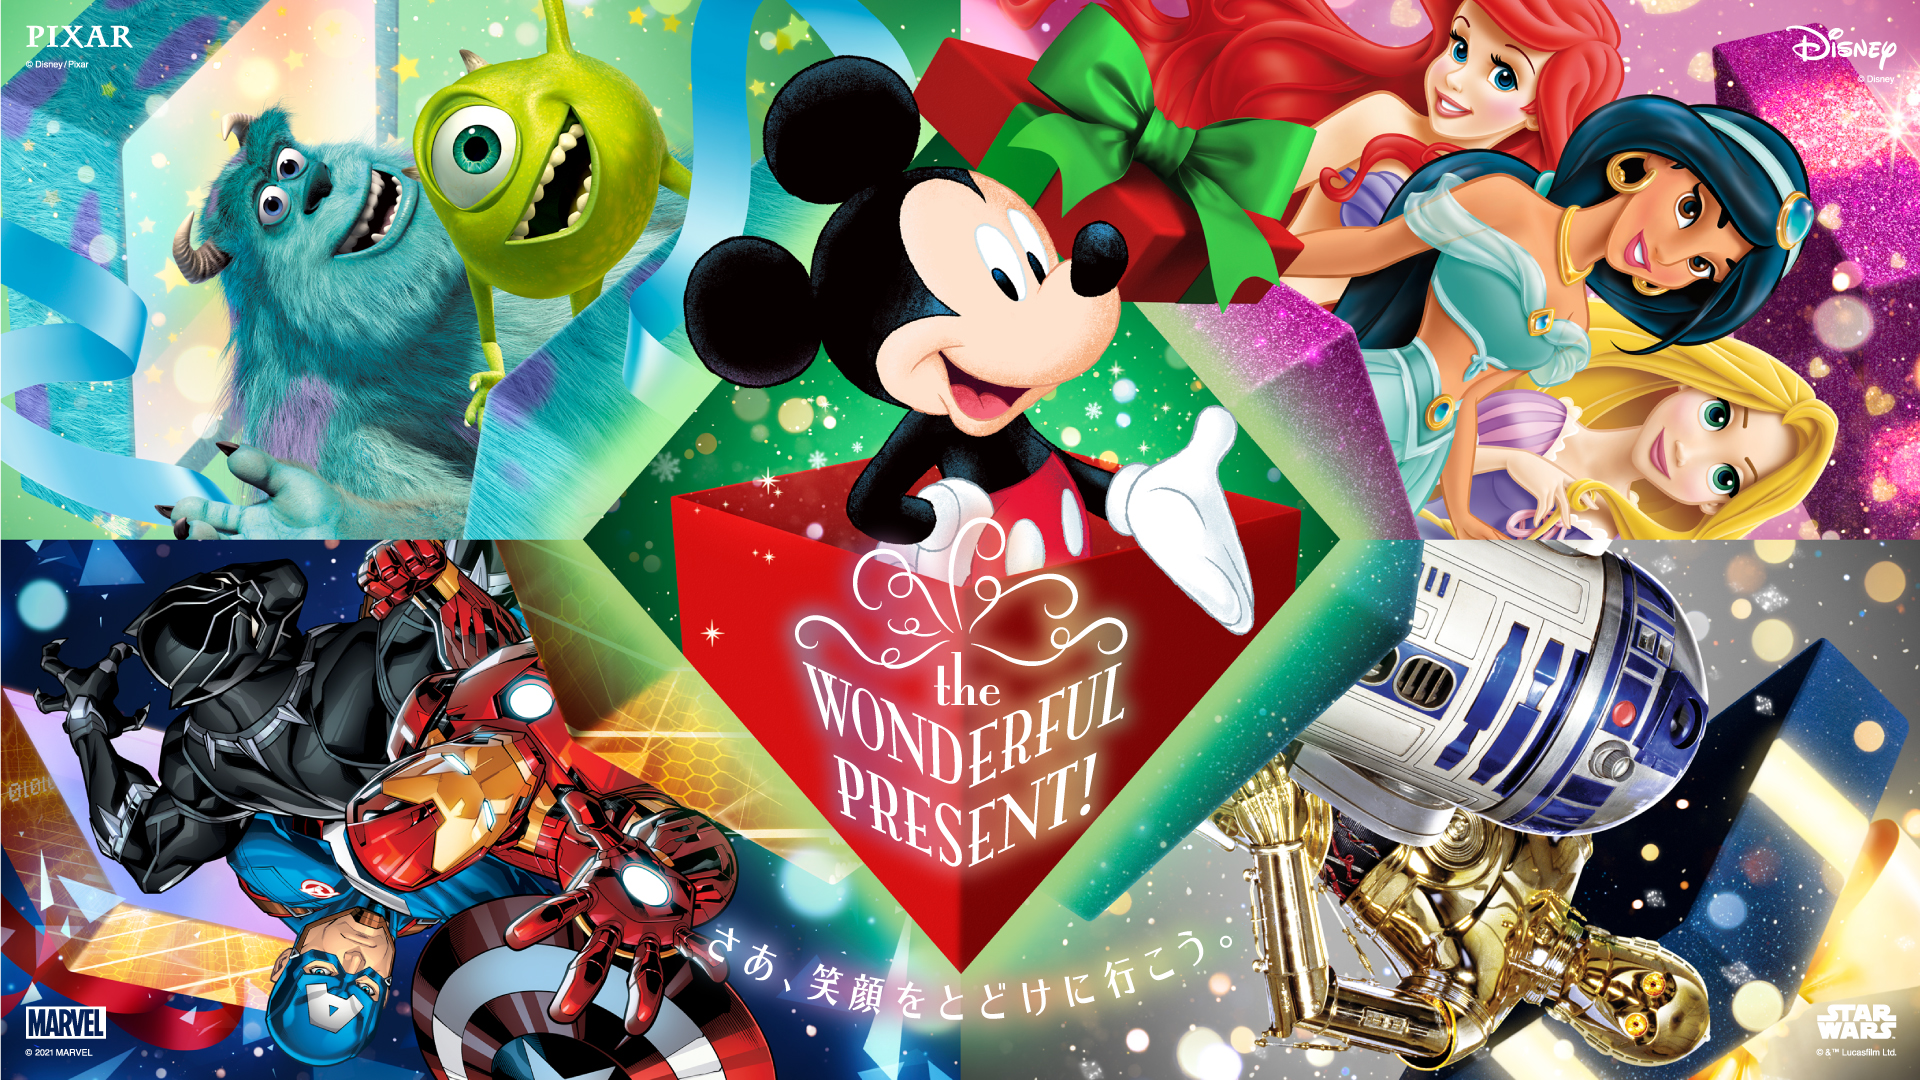 ディズニーが贈る21年のクリスマスプロモーション Disney Christmas The Wonderful Present さぁ 笑顔をとどけに行こう ウォルト ディズニー ジャパン株式会社のプレスリリース